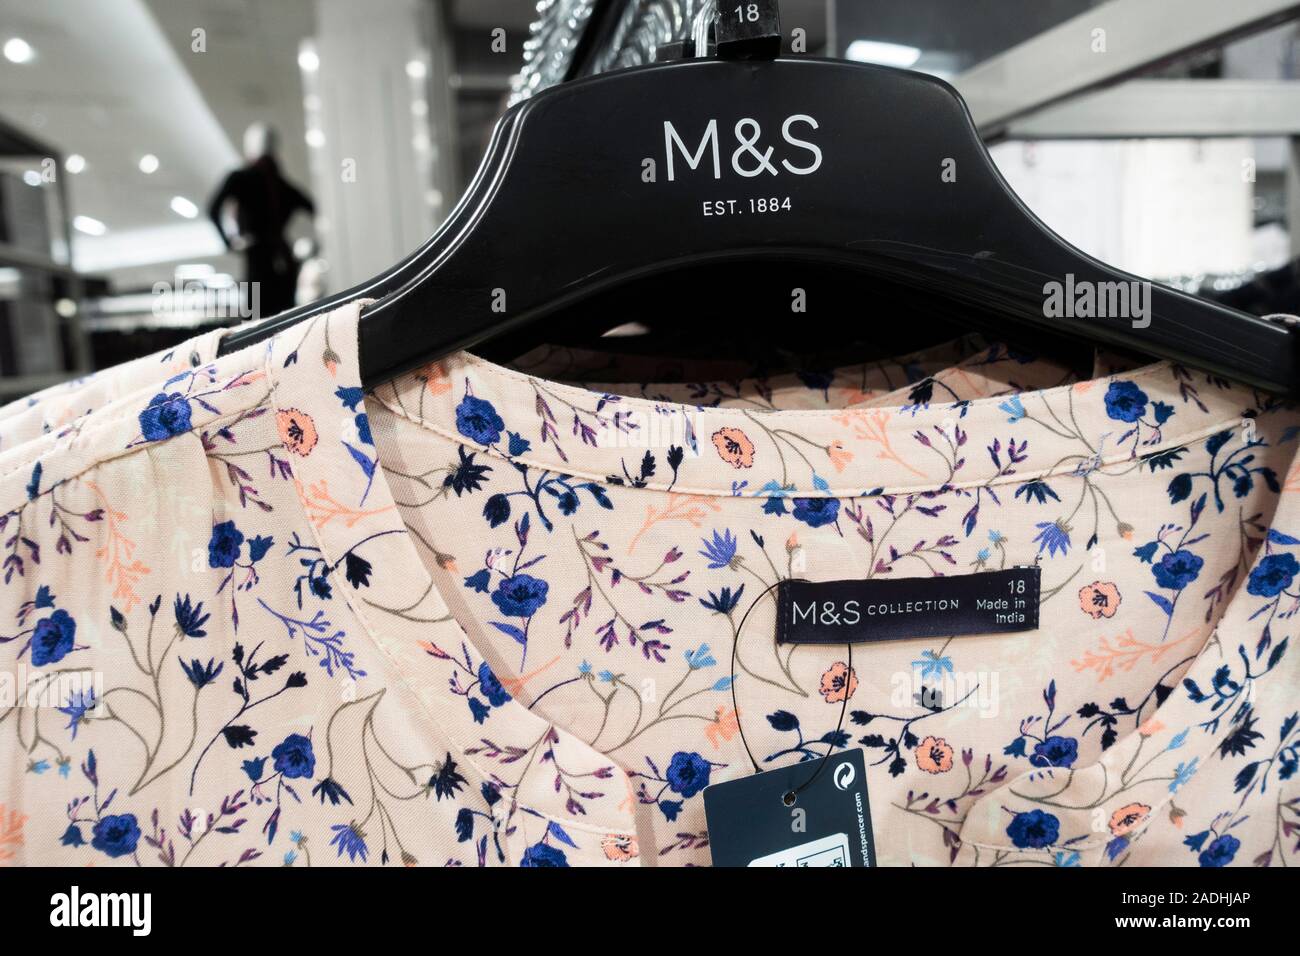 de mujeres mostrar en M&S, tienda de Marks & Spencer. UK Fotografía de stock Alamy